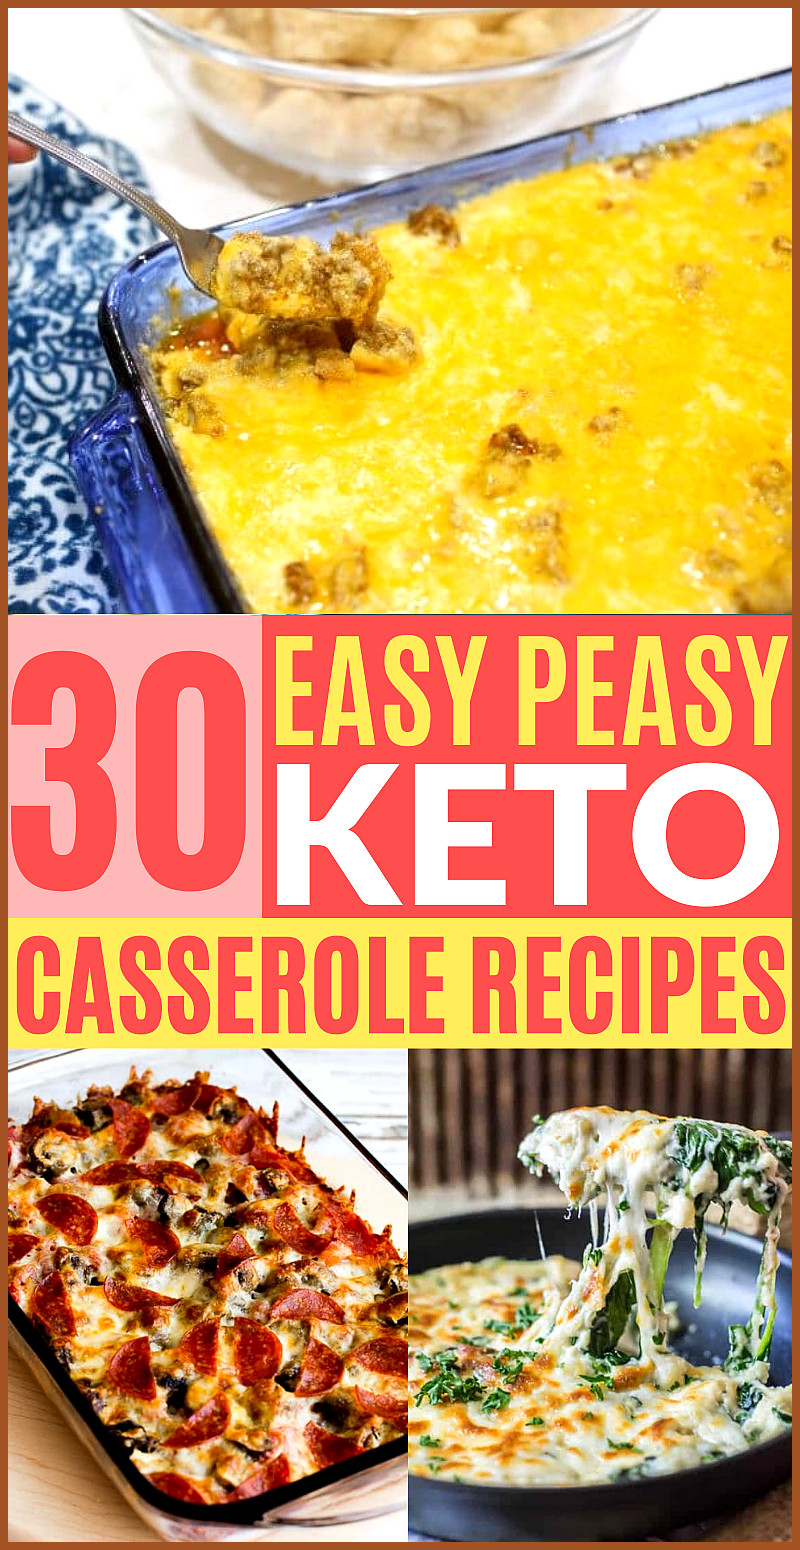 Clean Keto Casserole Recipes
 30 Easy Keto Casserole Recipes Low Carb carb